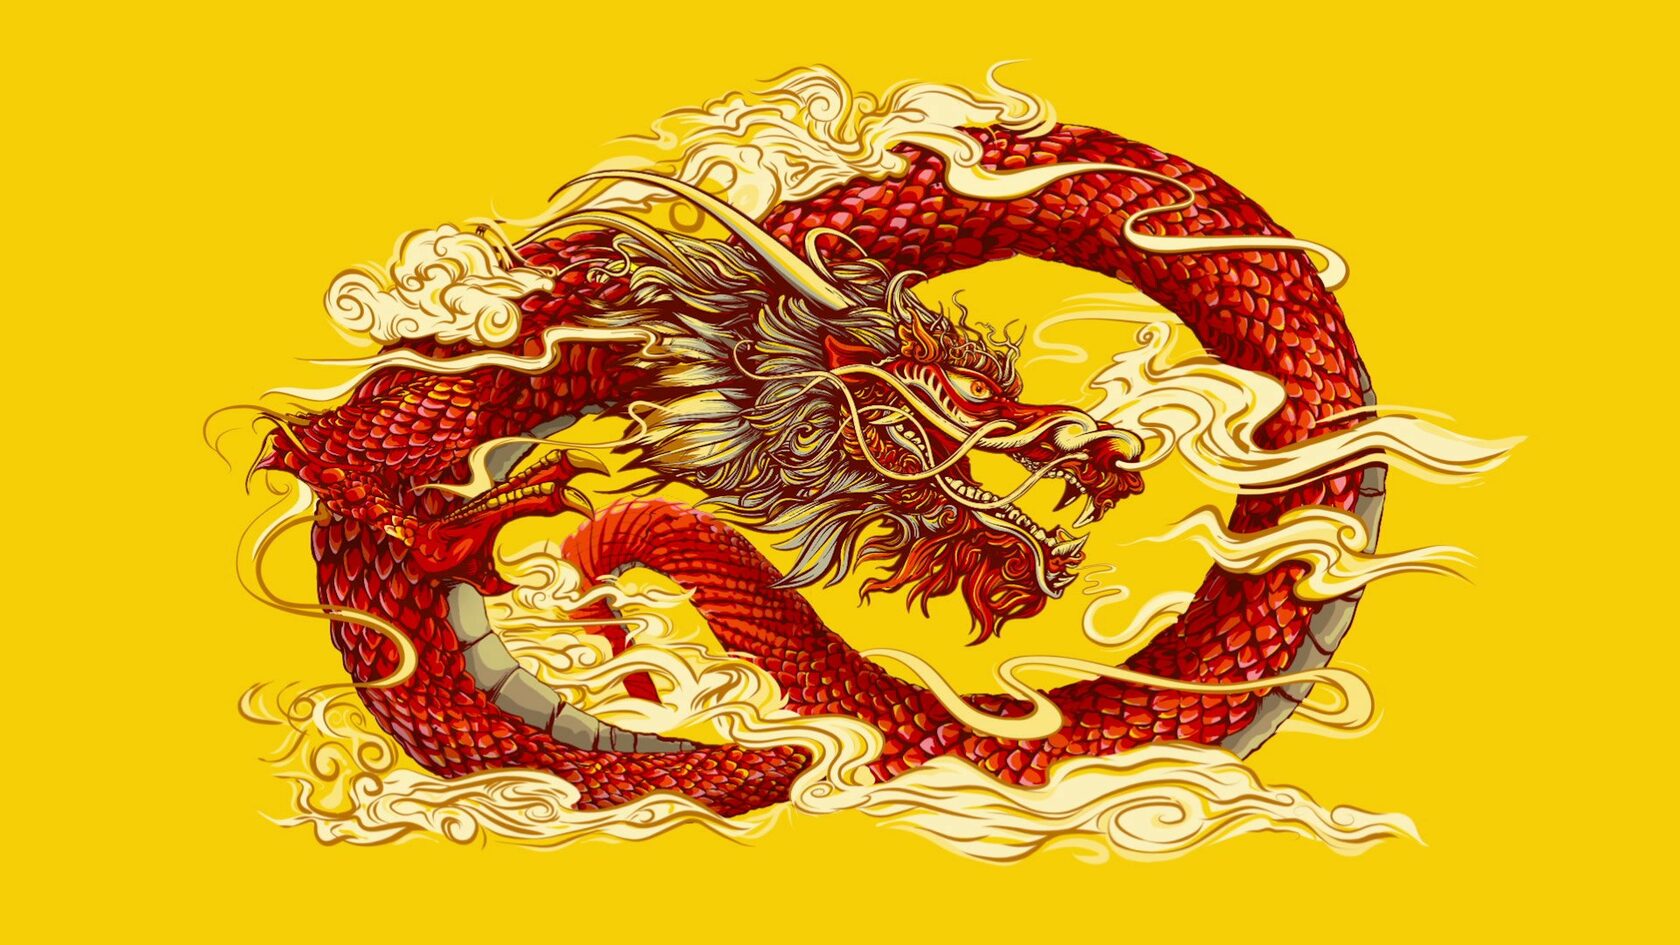 На обложке для конкурса красный дракон свернувшийся в клубок на жёлтом фоне